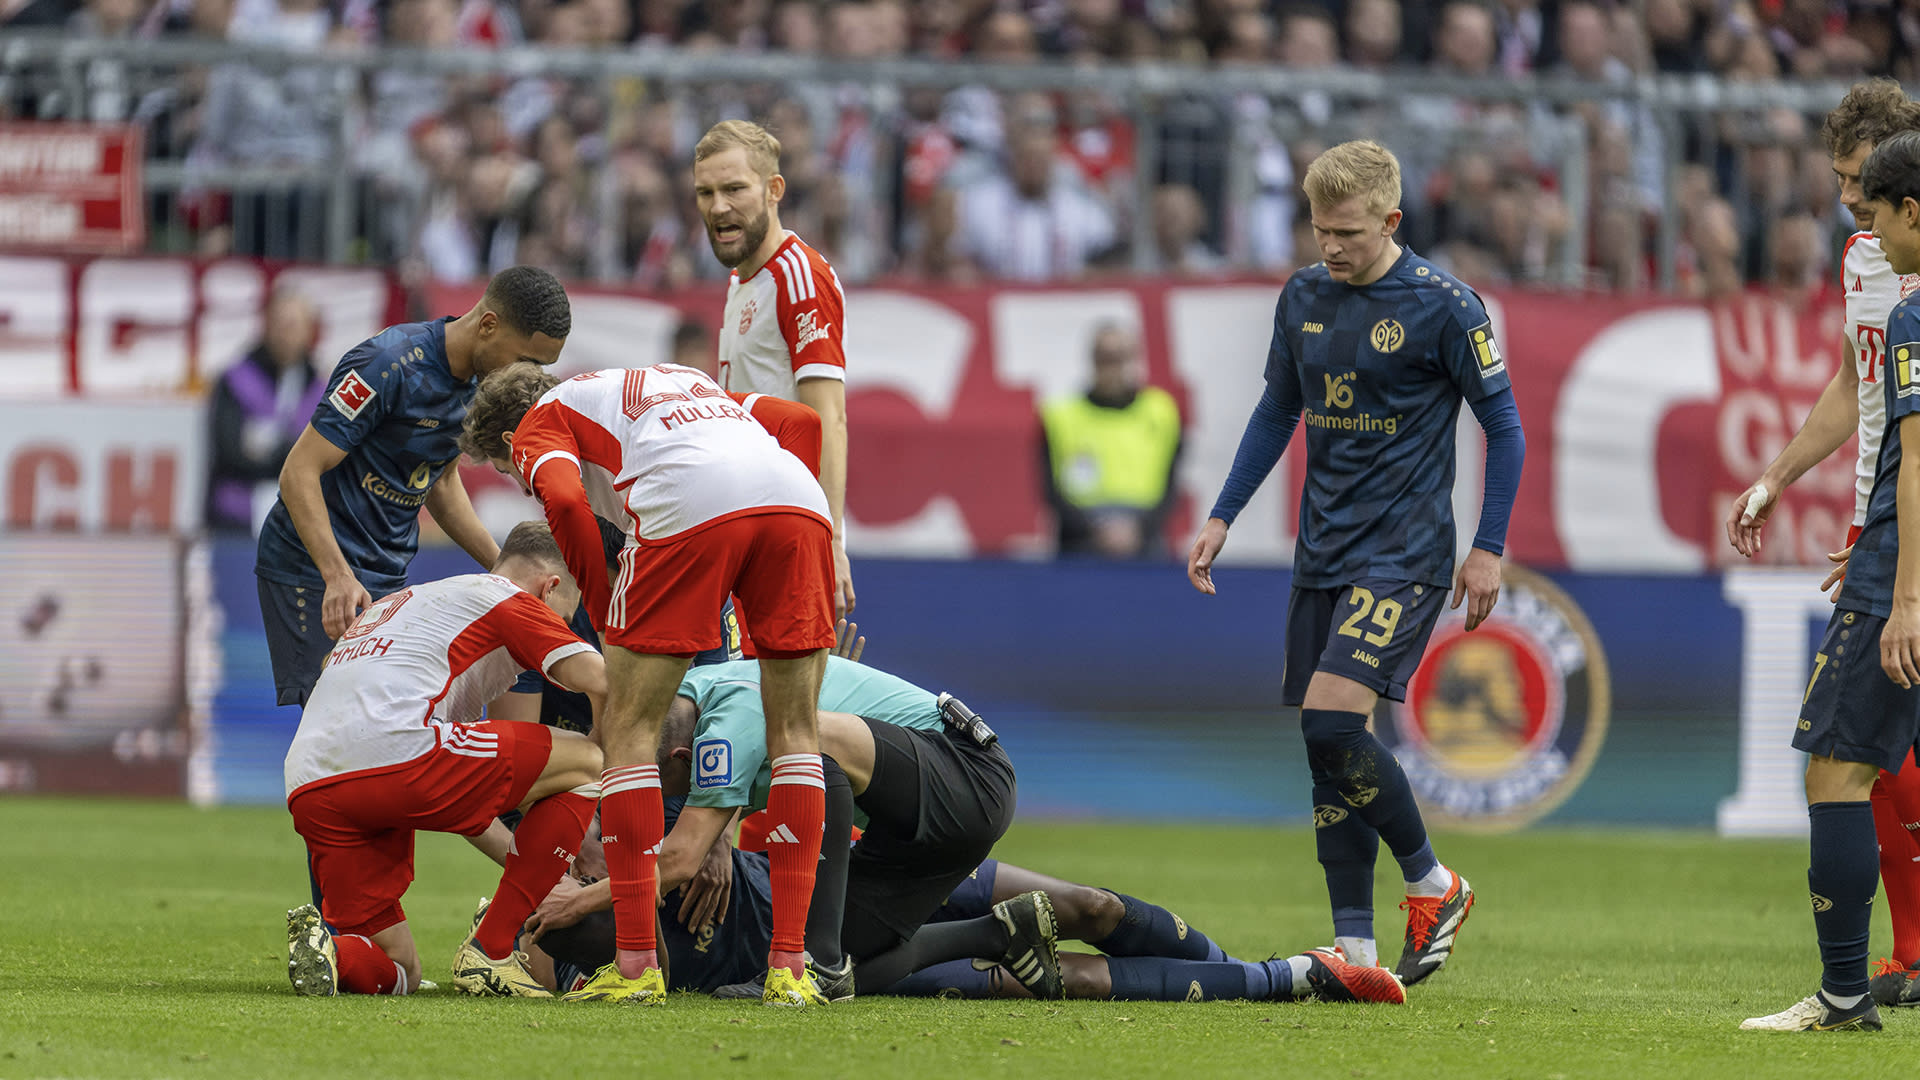 Mainz-speler bedankt scheidsrechter voor mogelijk redden van zijn leven 